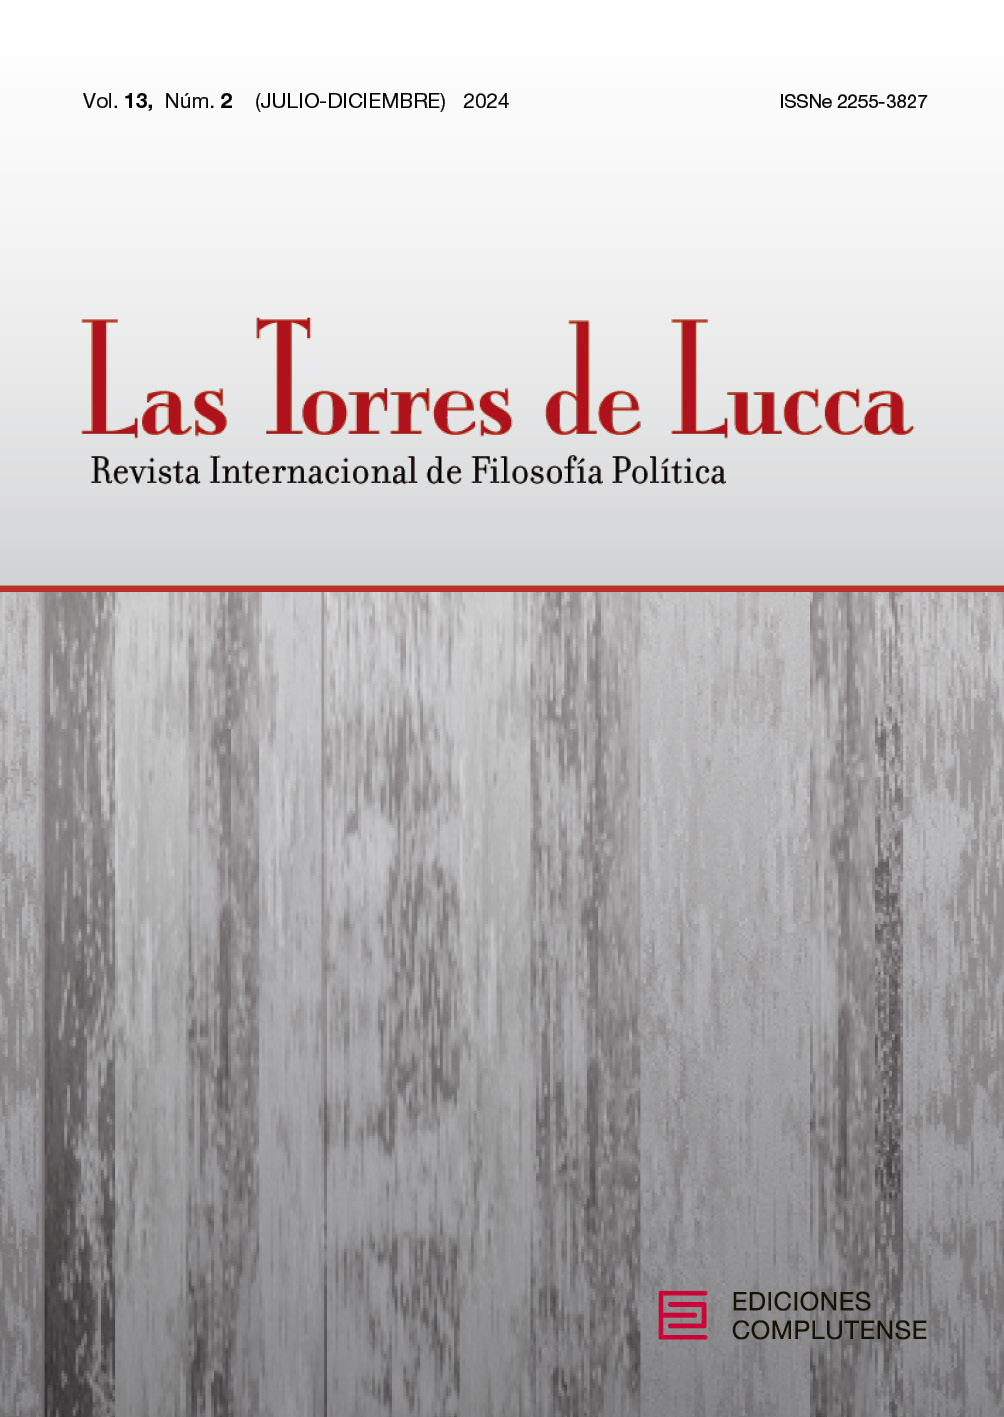 					Afficher Vol. 13 No 2 (2024): Dossier: Sesgos de edad y democracia deliberativa: nuevos retos (Mar Cabezas y María G. Navarro, Coords.)
				